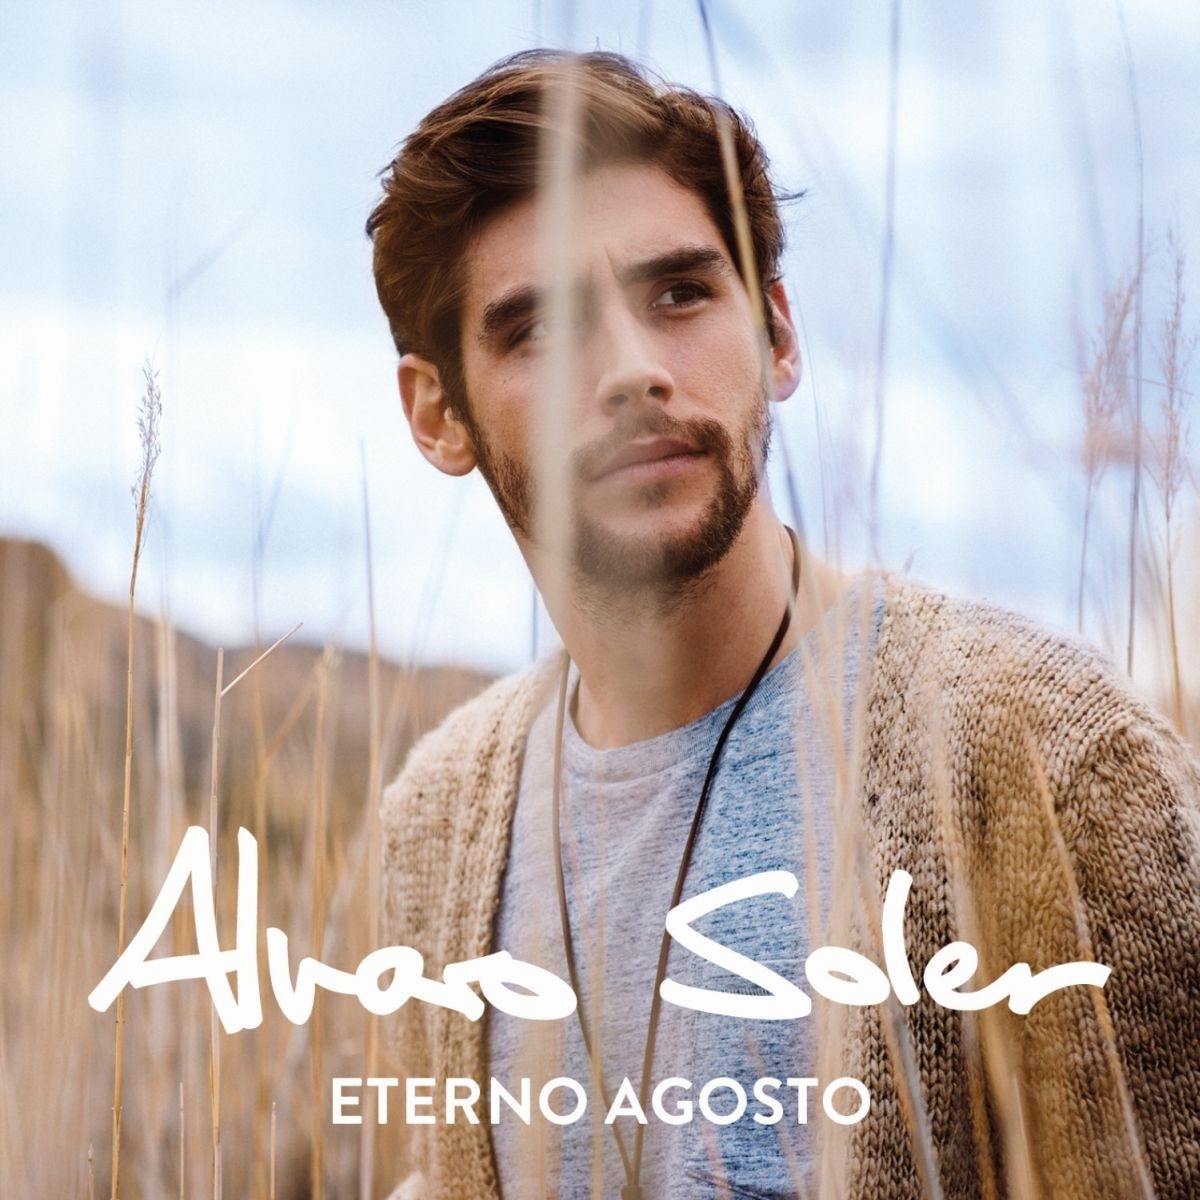 Eterno Agosto(2015年Alvaro Soler專輯)